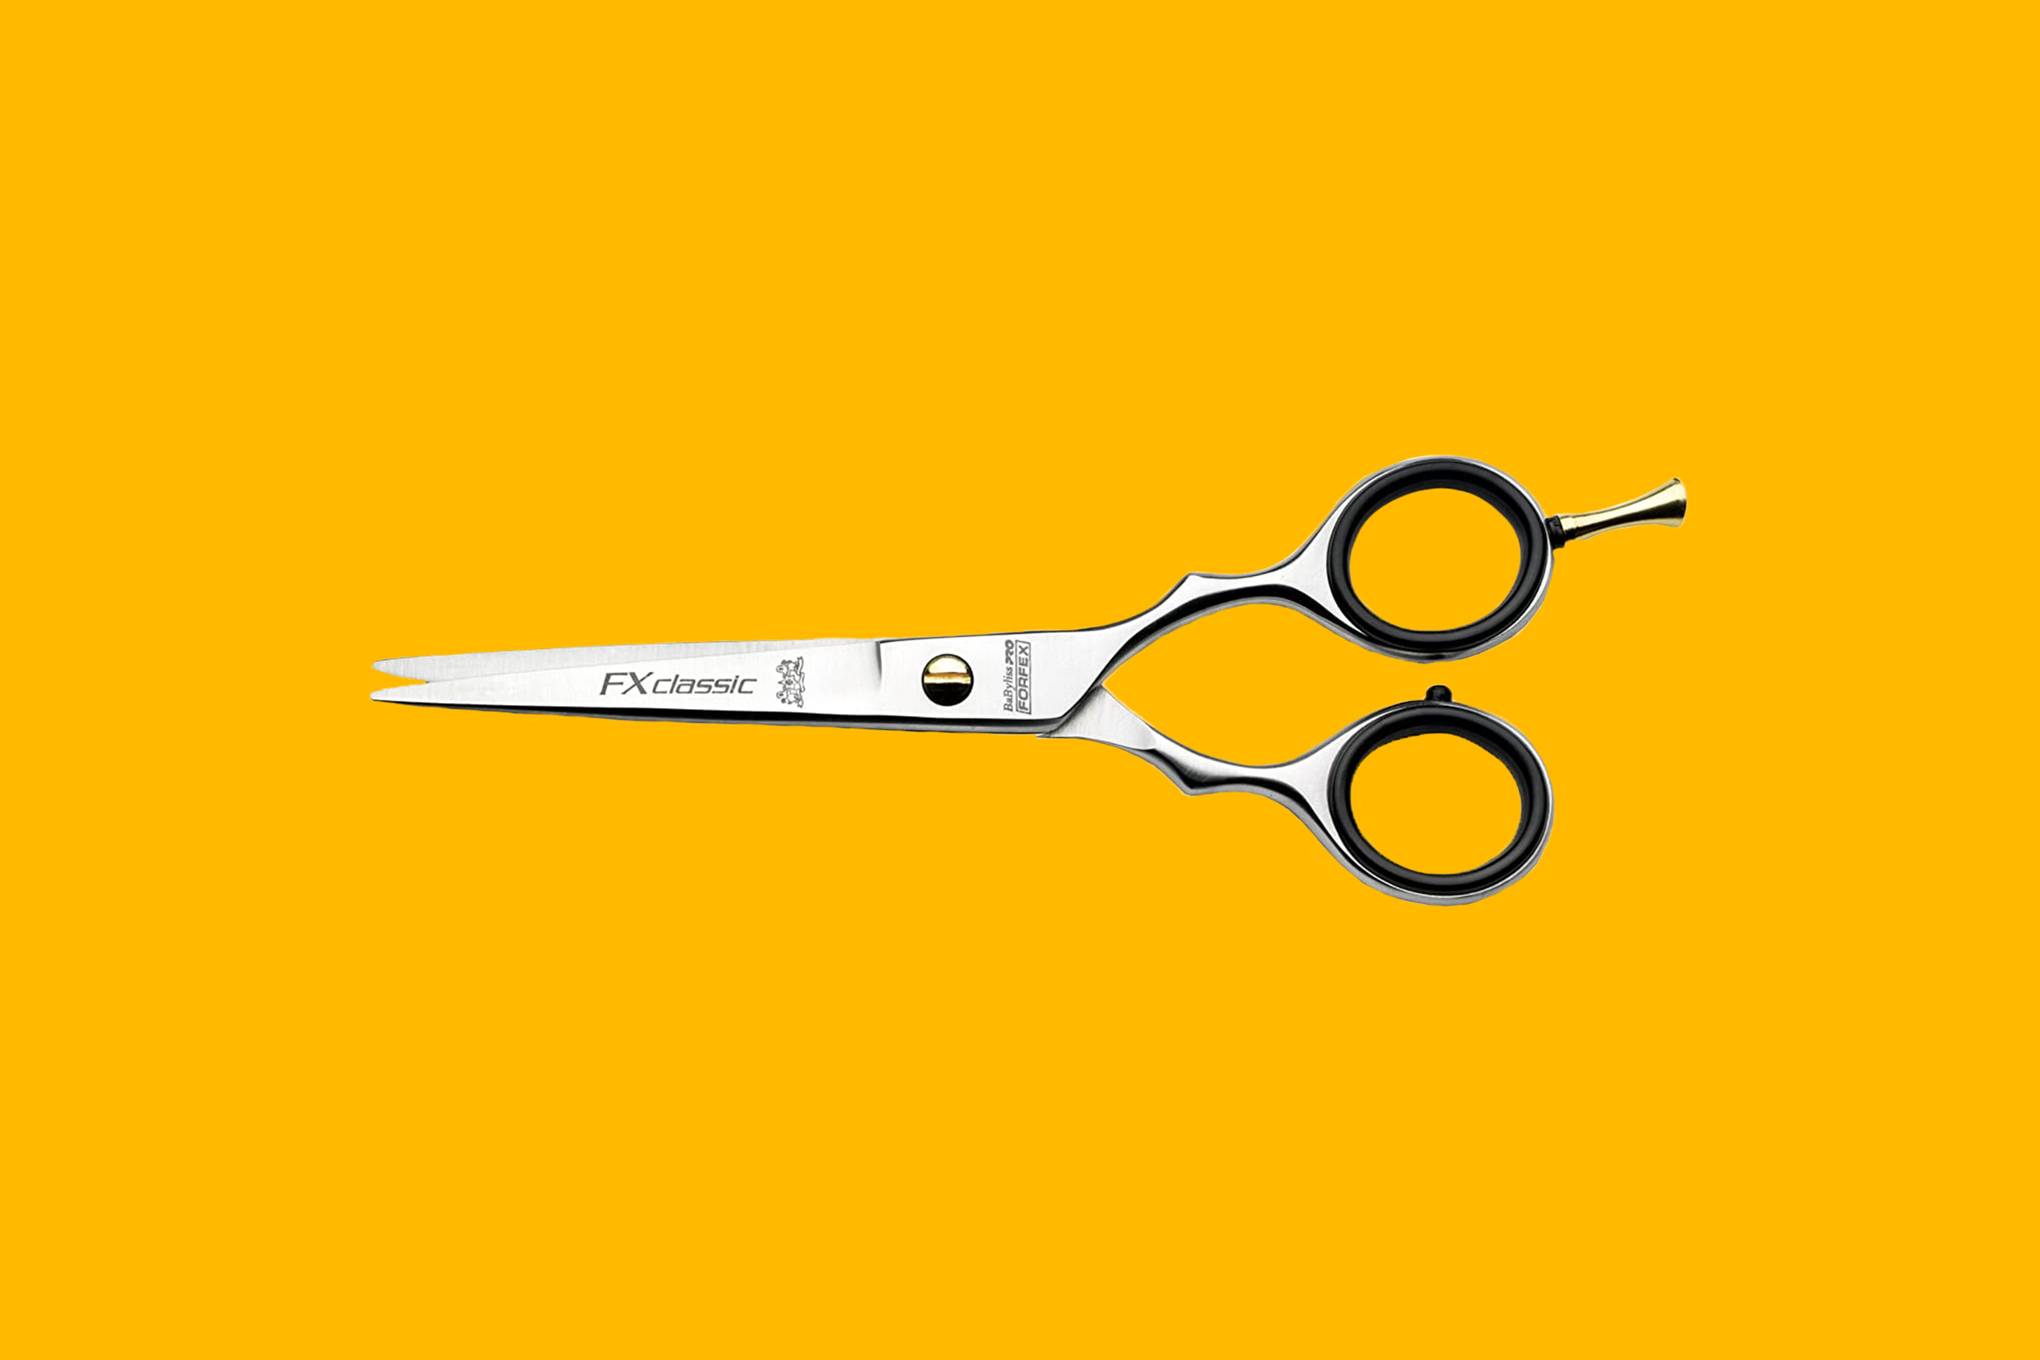 remington quick cut hair clippers argos